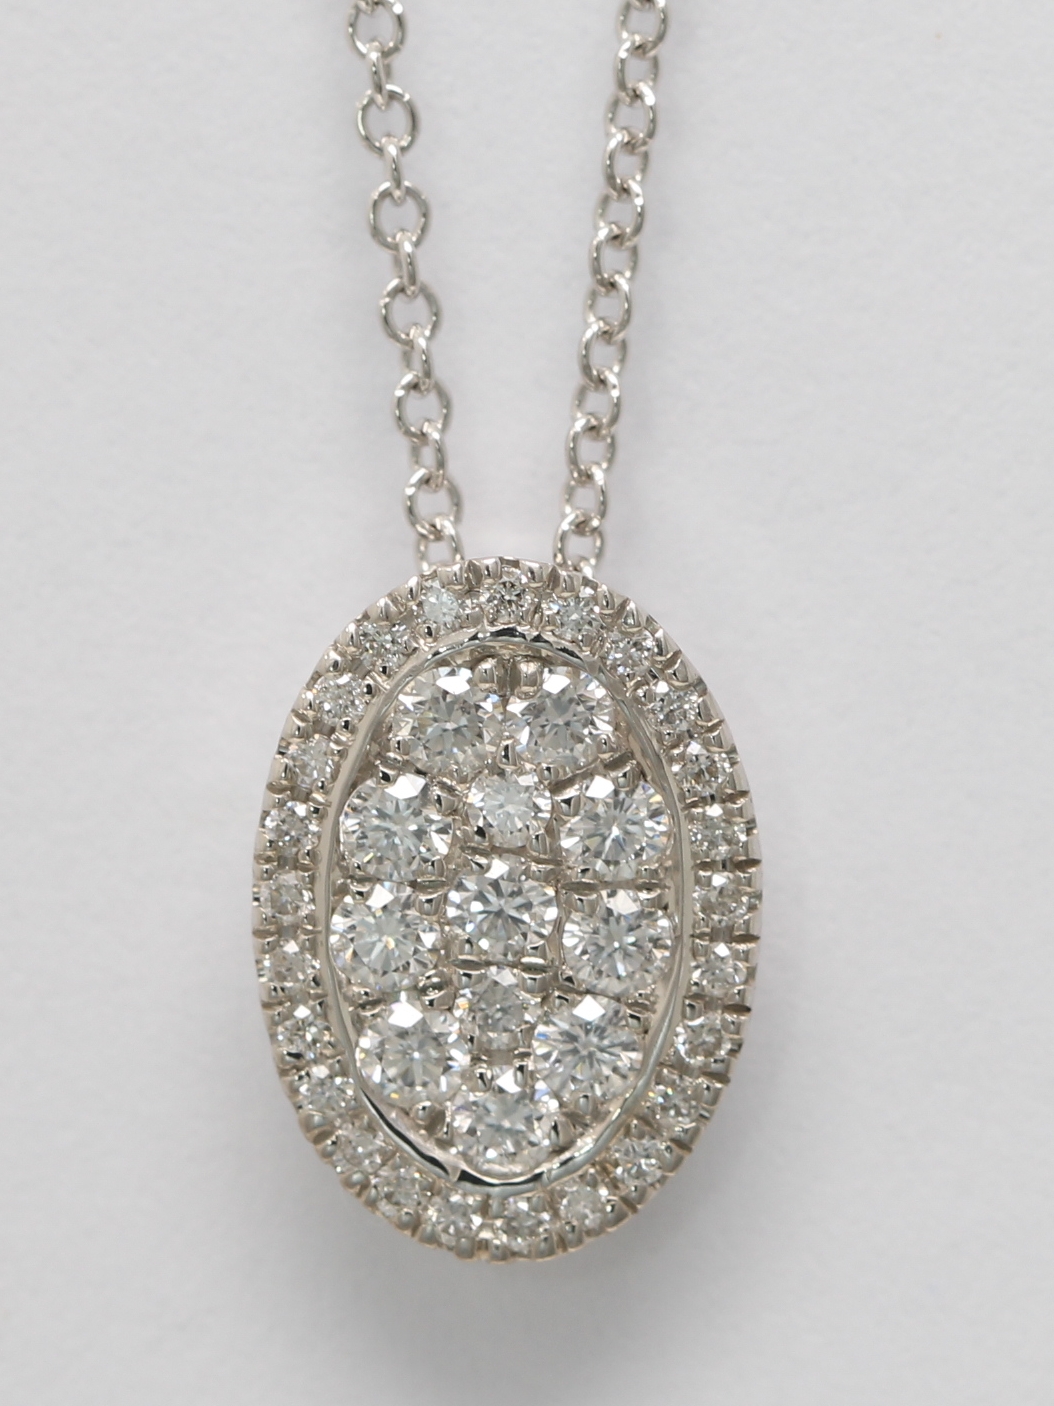 Details about   9.80 CT Oval Cut Y-Drop Shape Diamond Pendant Necklace 14K White Gold Enhanced 